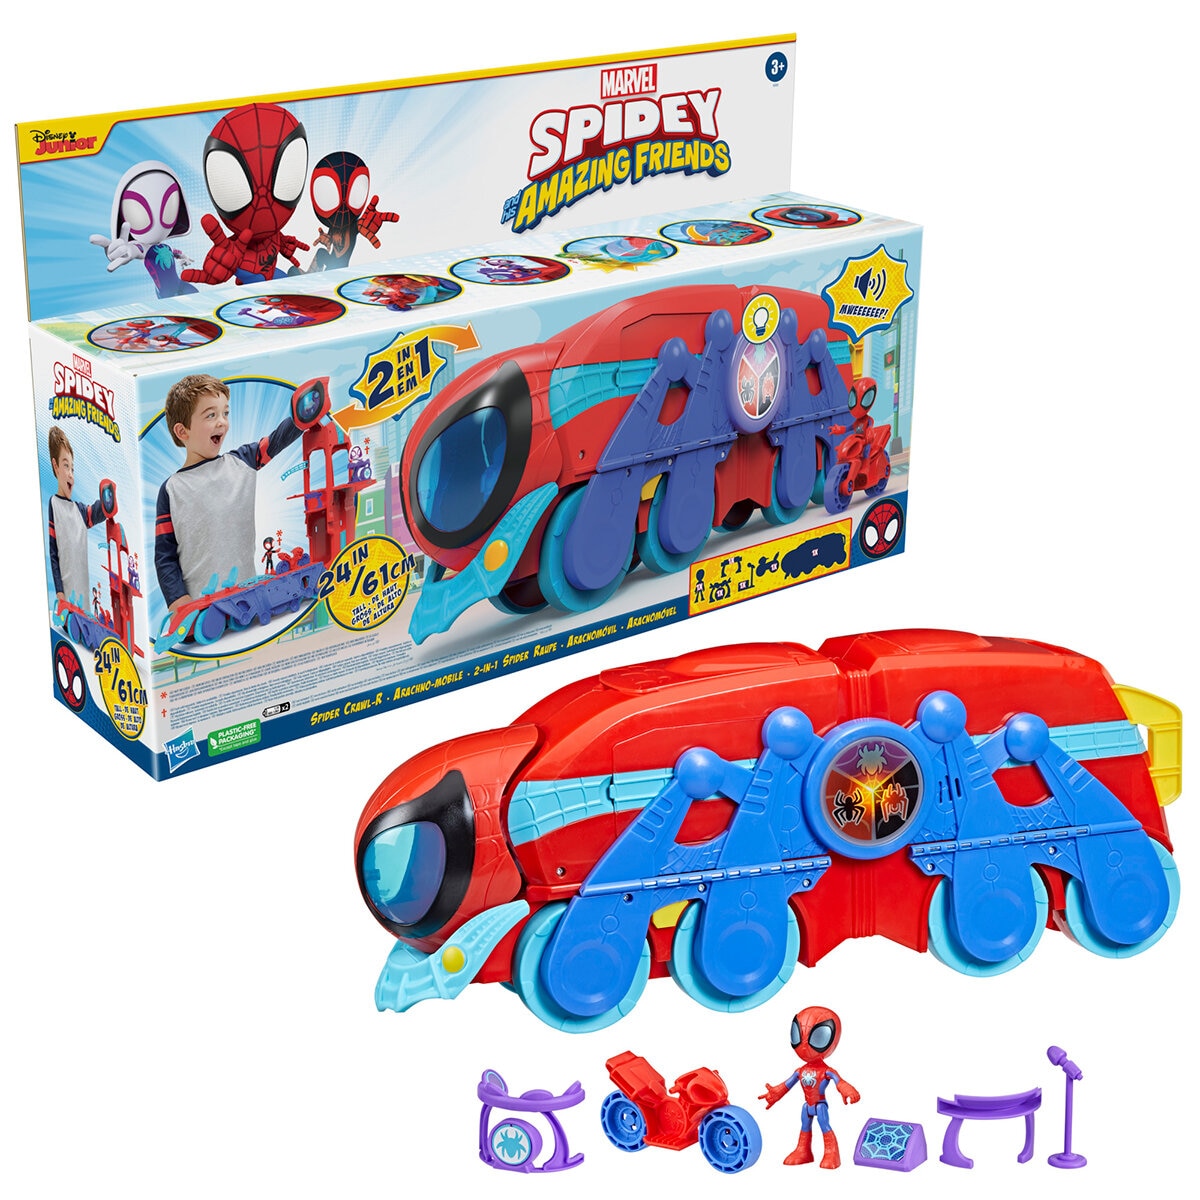 2 Lanzadores De Telaraña De Juguete Para Niños Spiderman